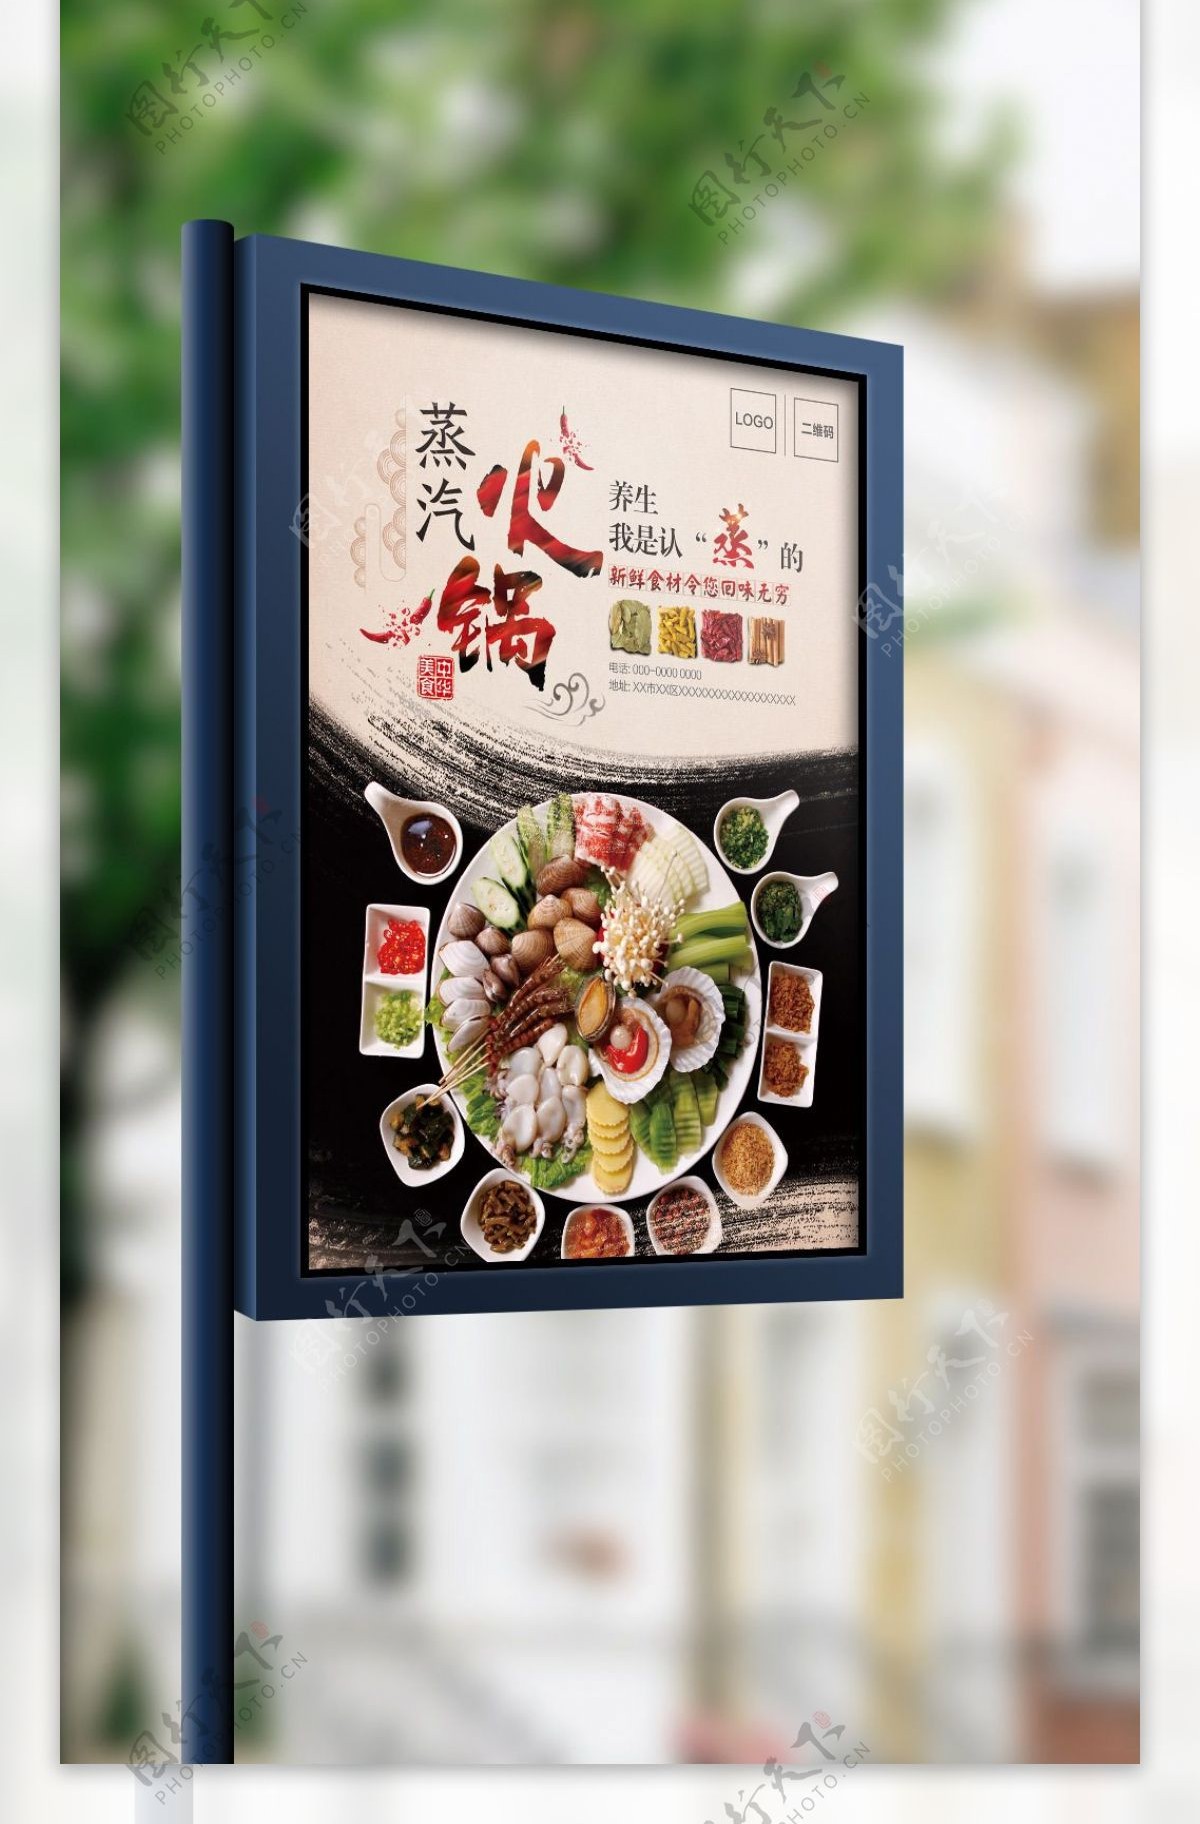 中国风高端大气餐饮蒸汽火锅宣传海报